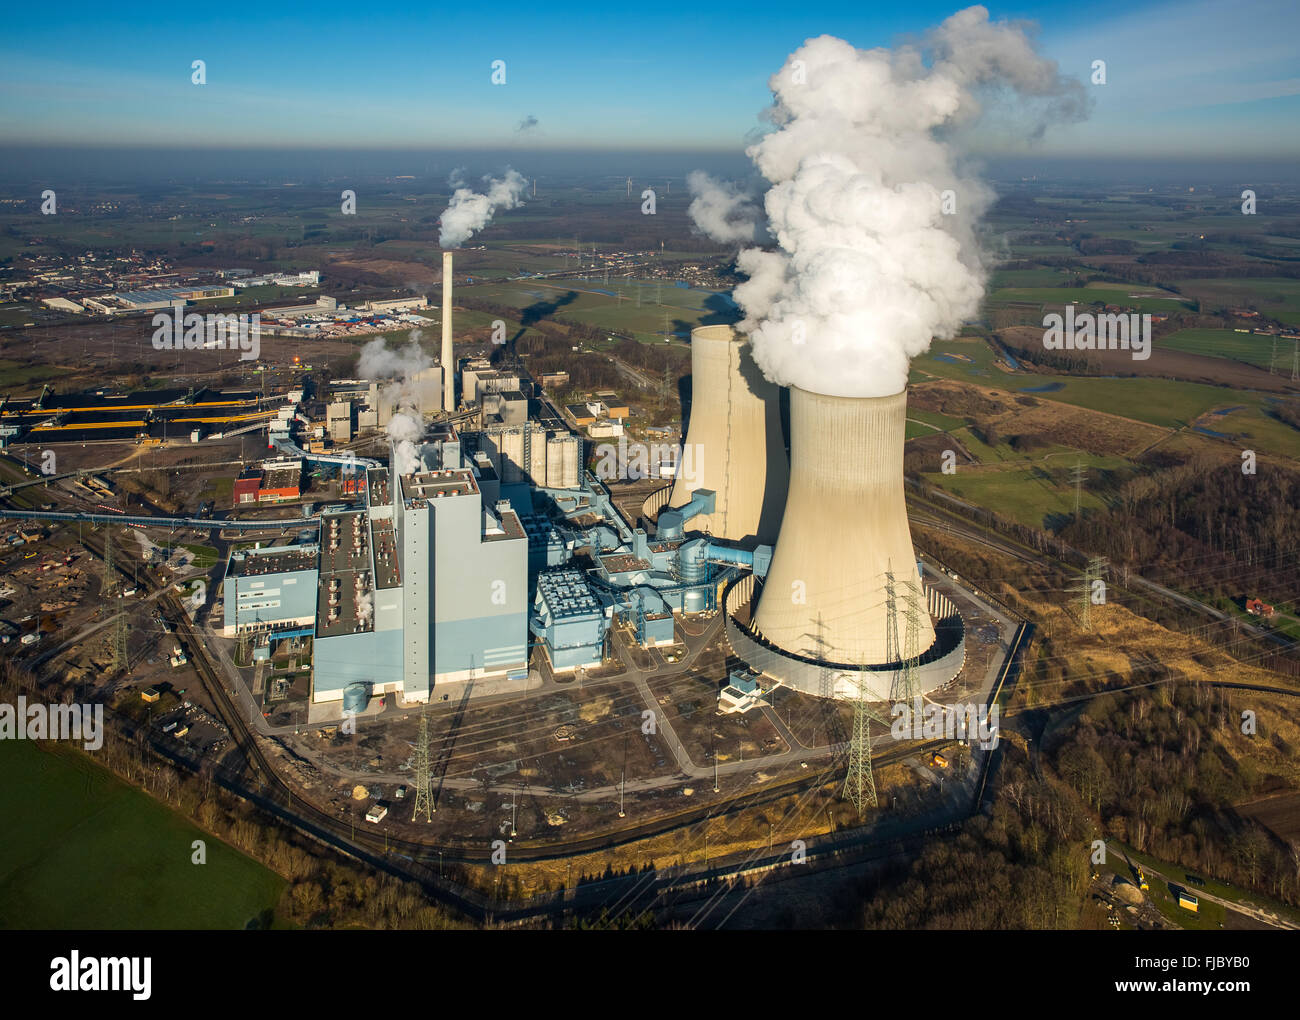 Vista aérea de la planta de energía de Westfalen, Kraftwerk, RWE Power, la planta de energía de carbón, la antigua planta de energía nuclear, Welver THTR Hamm-Uentrop Foto de stock